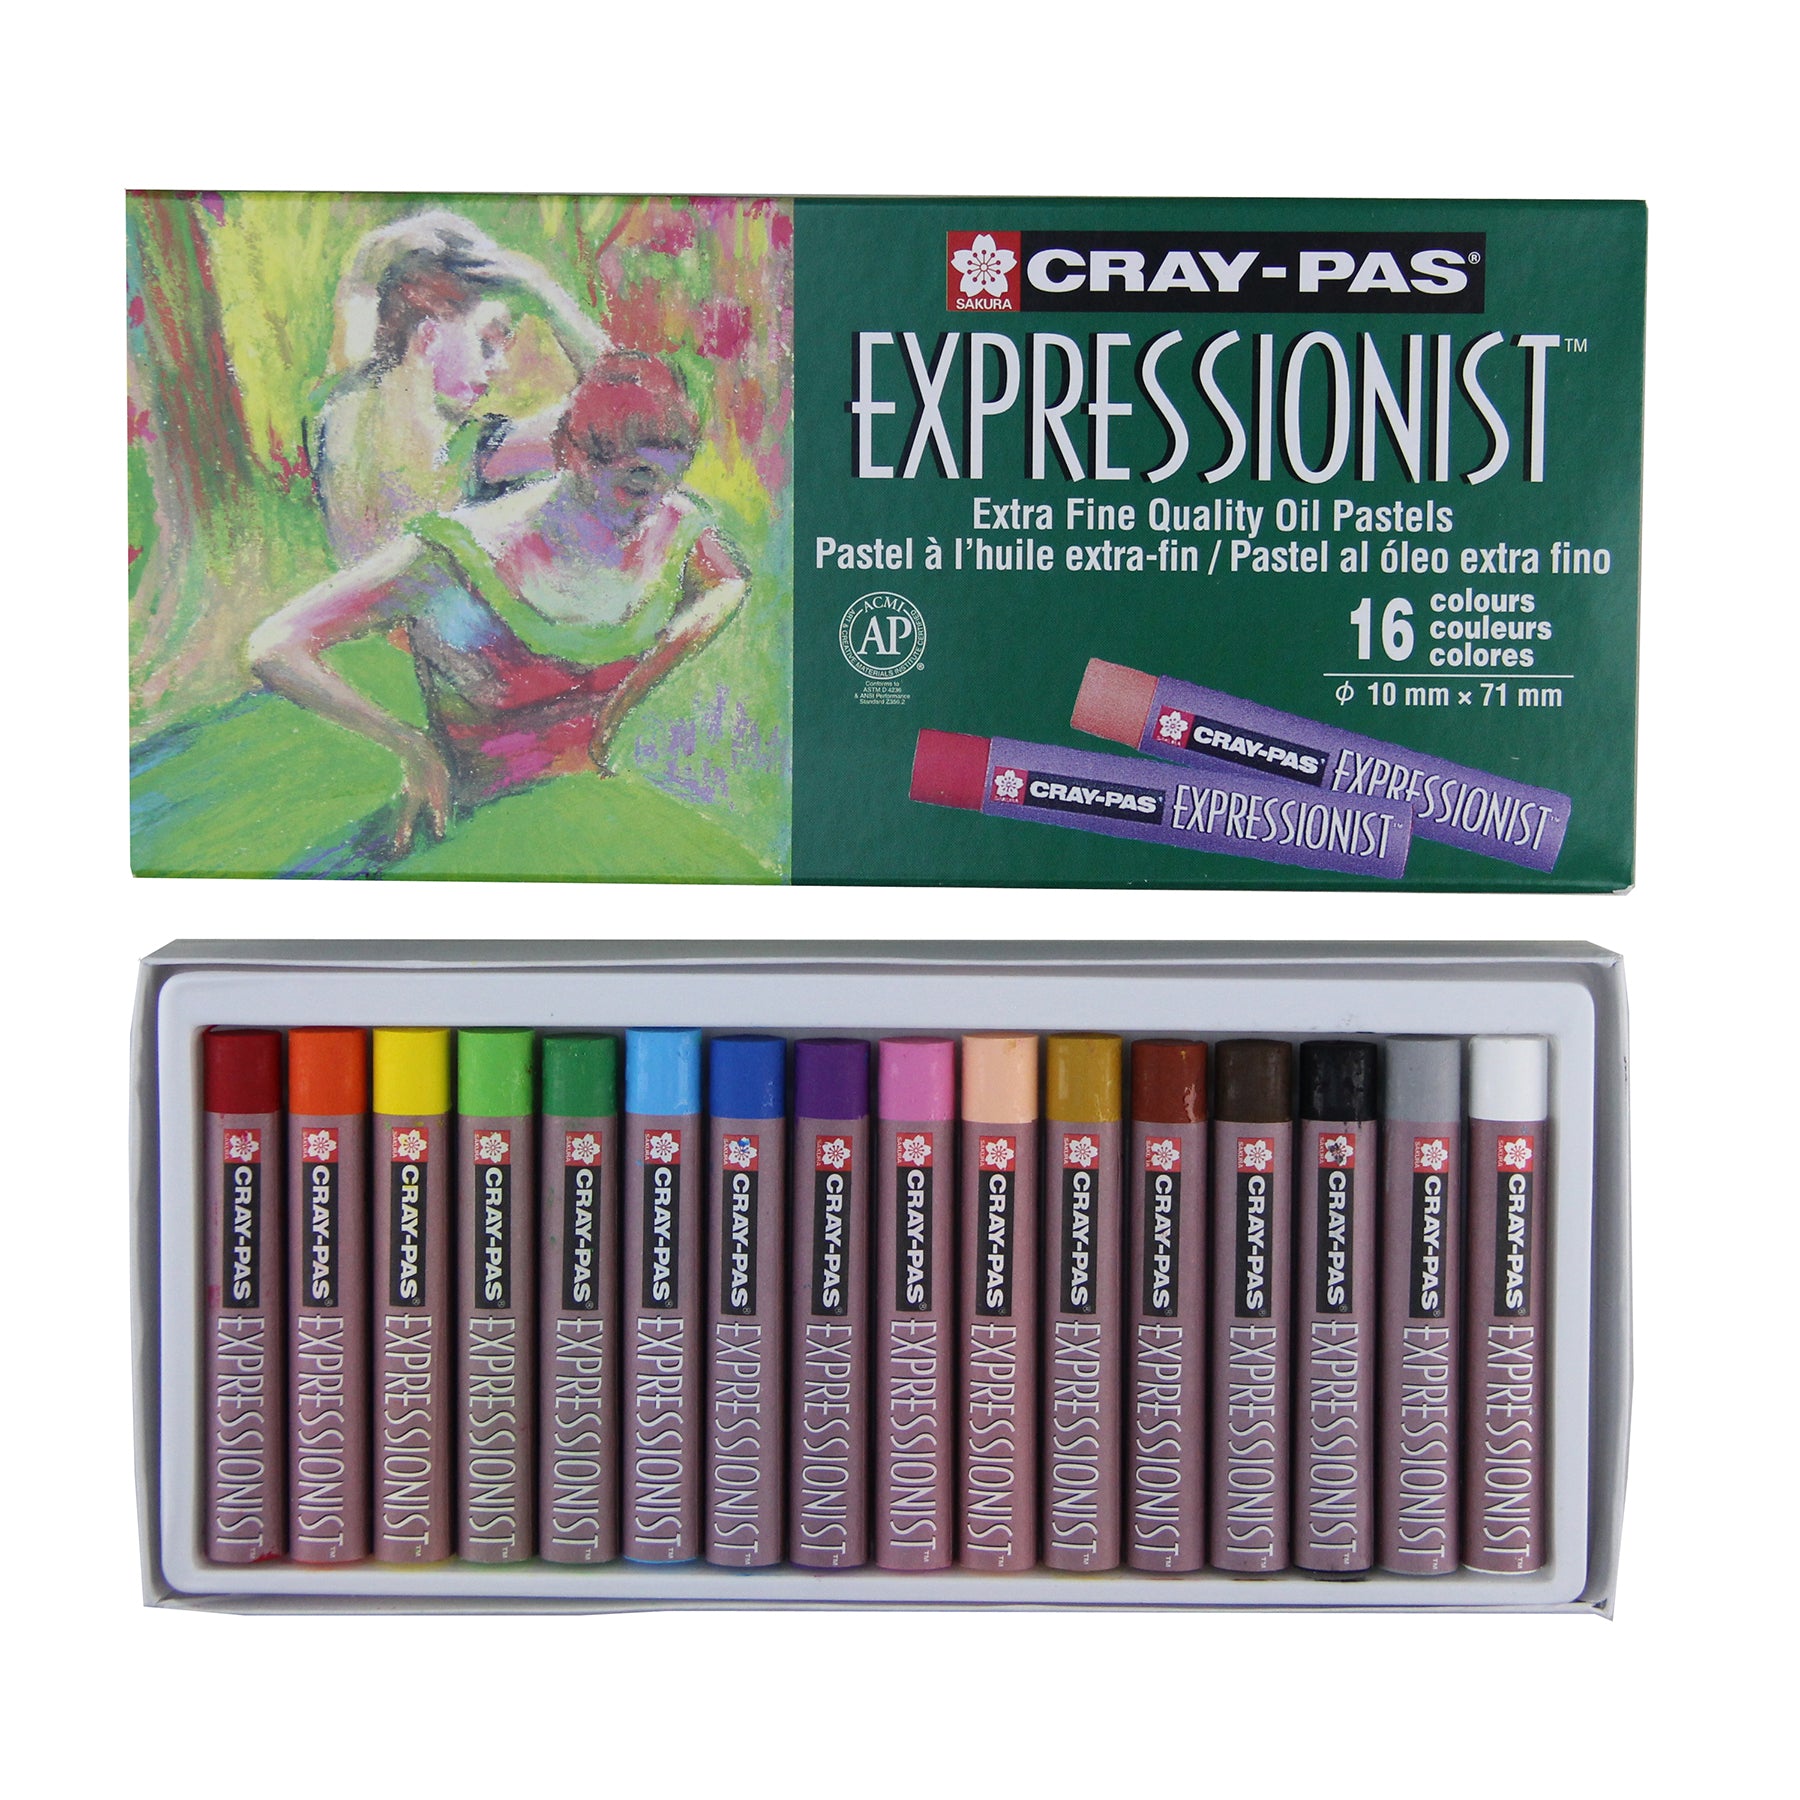 Cray-Pas Expressionist Oil Pastel Set 16 Colors